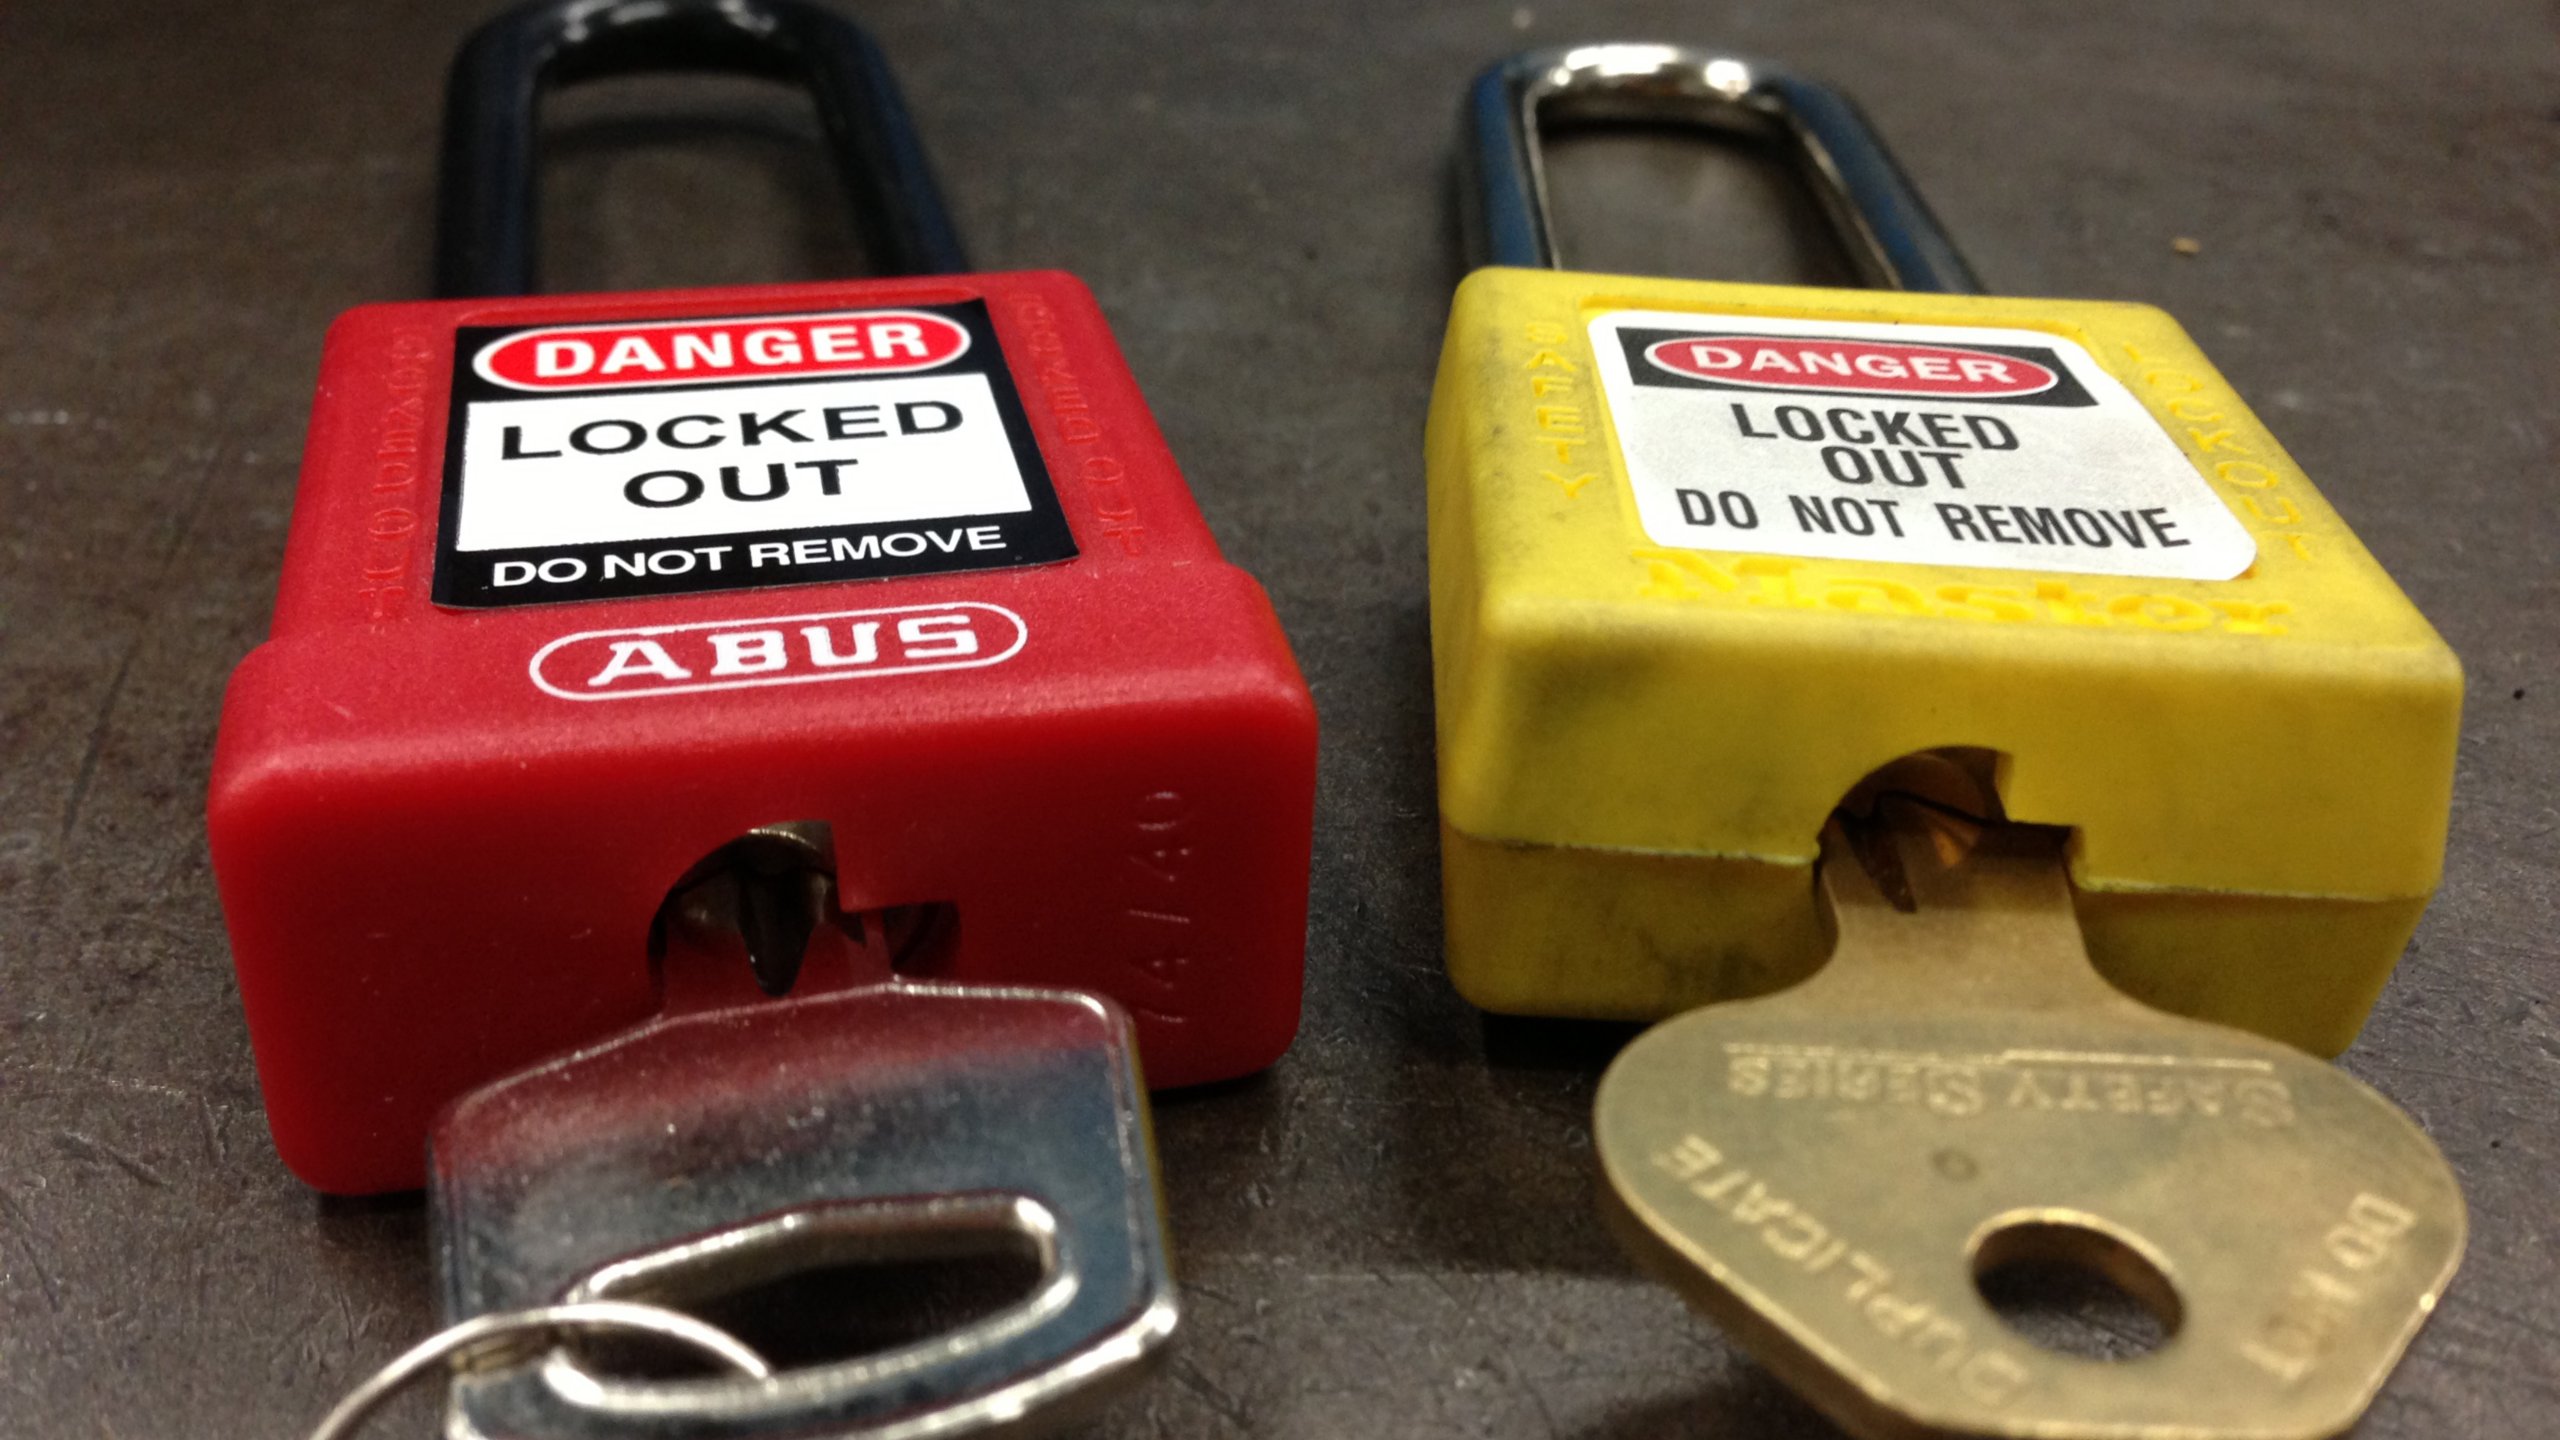 Keyed Lockout/Tagout locks